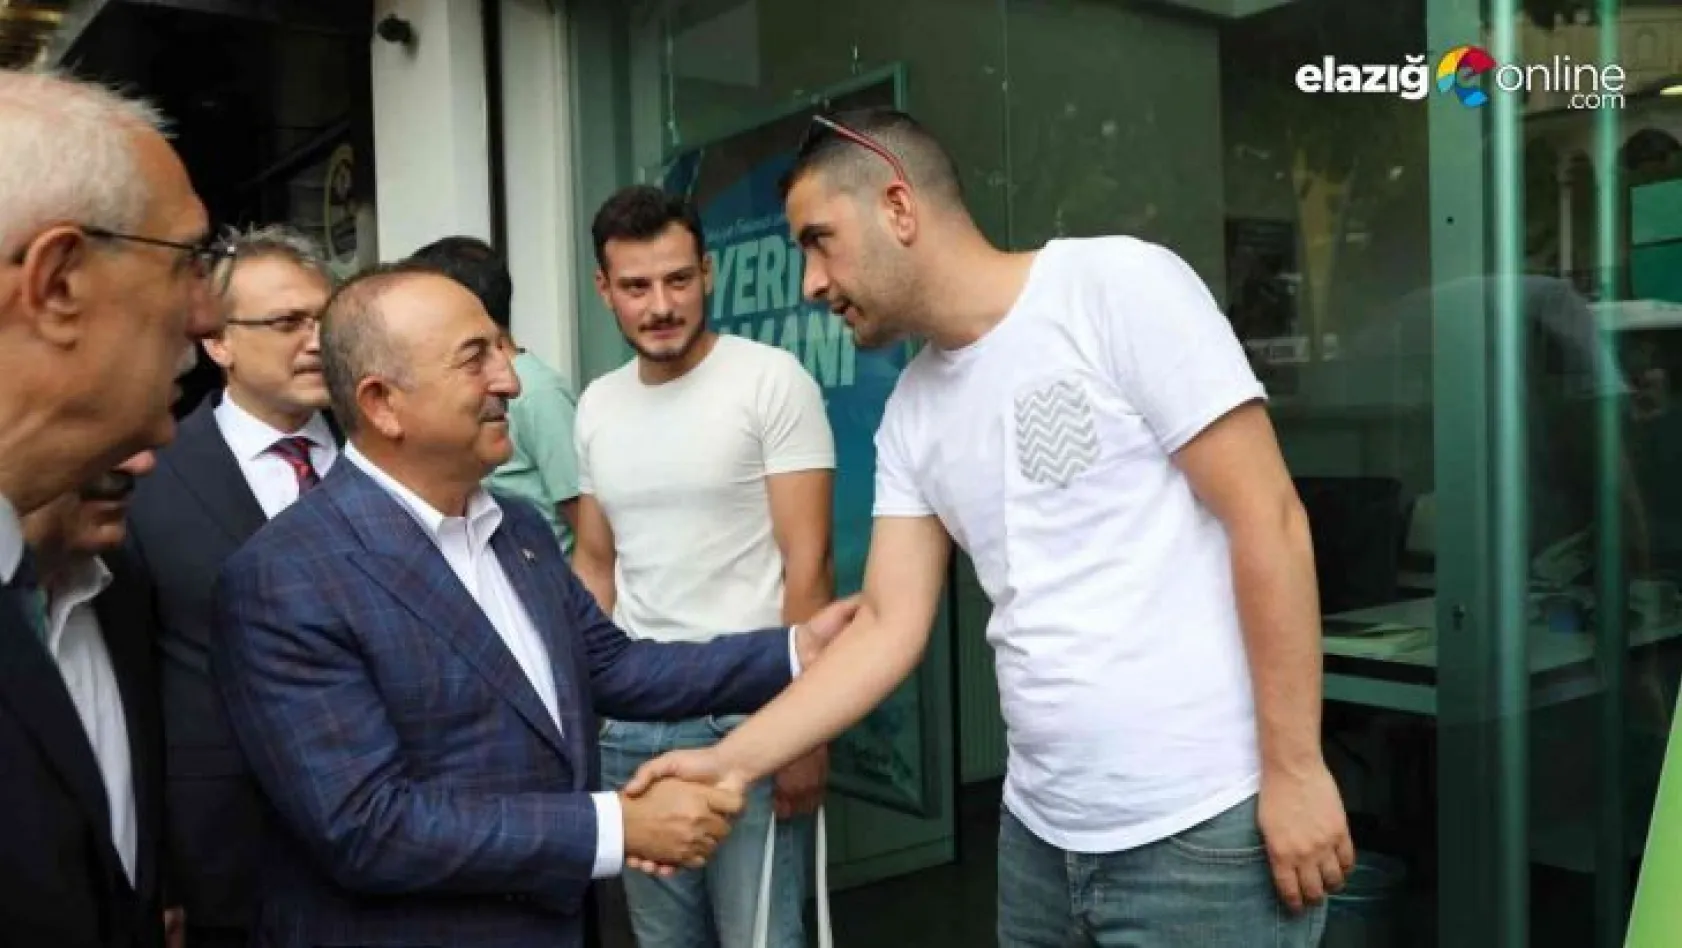 Dışişleri Bakanı Mevlüt Çavuşoğlu, Bingöl'de esnafla bir araya geldi